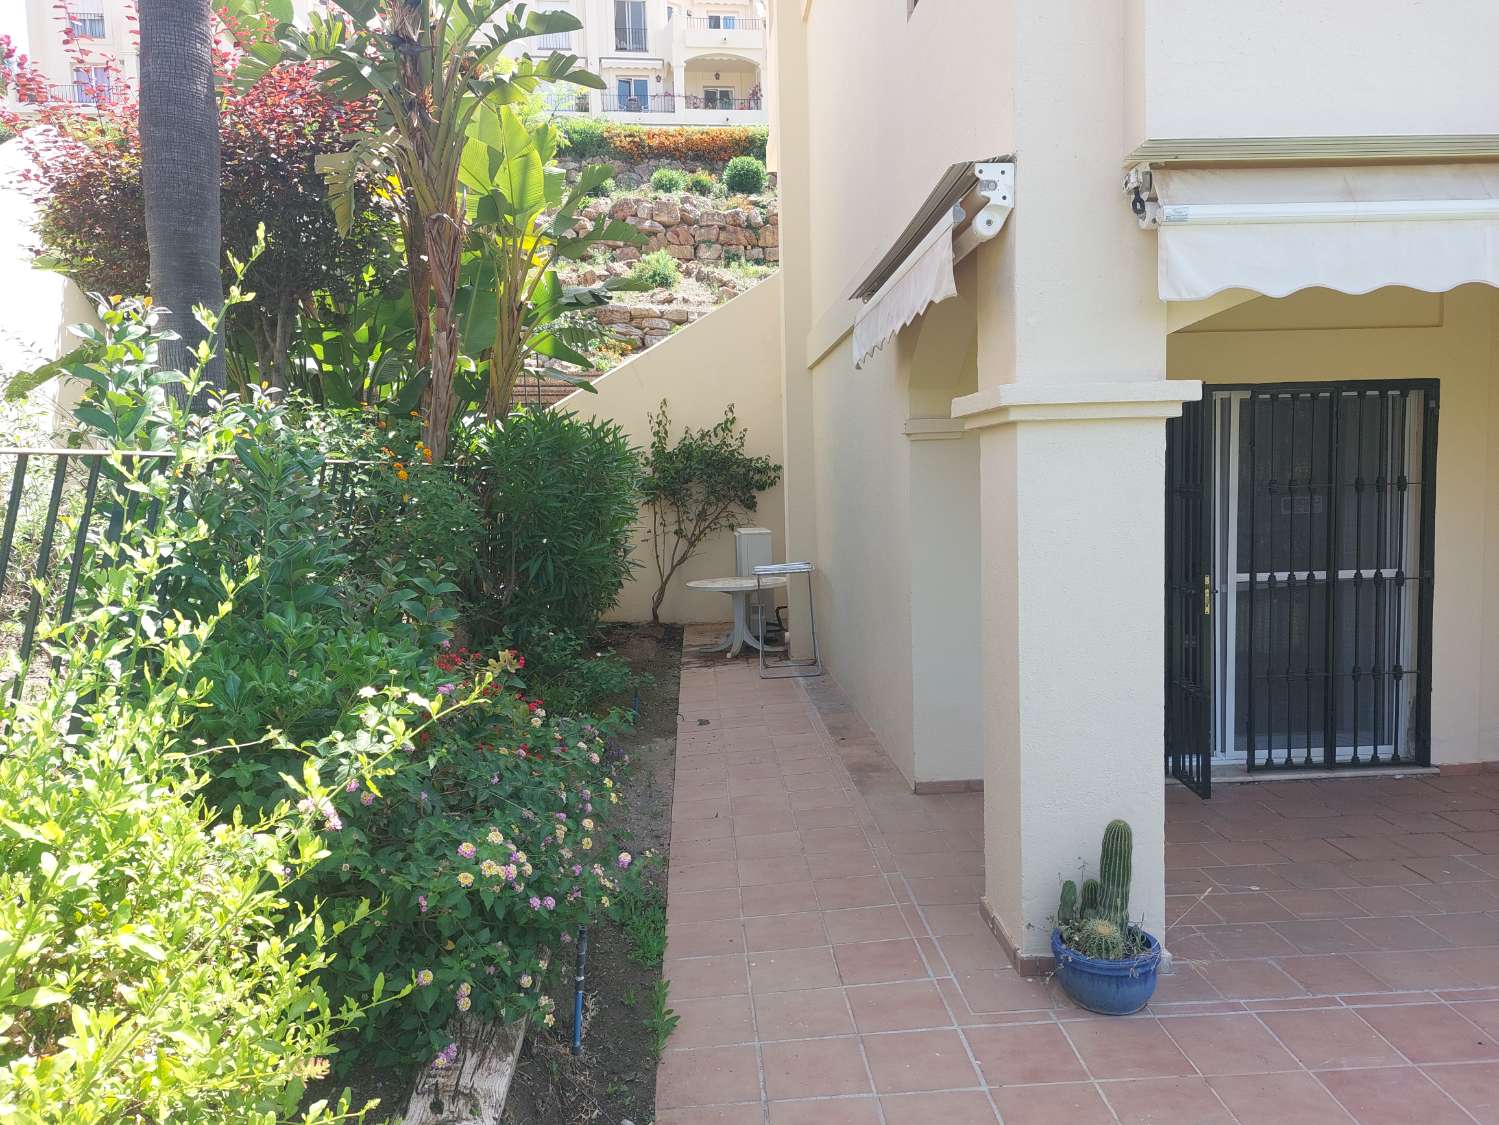 Maravilloso apartamento con jardín en una comunidad cerrada tranquila y exclusiva en La Quinta.